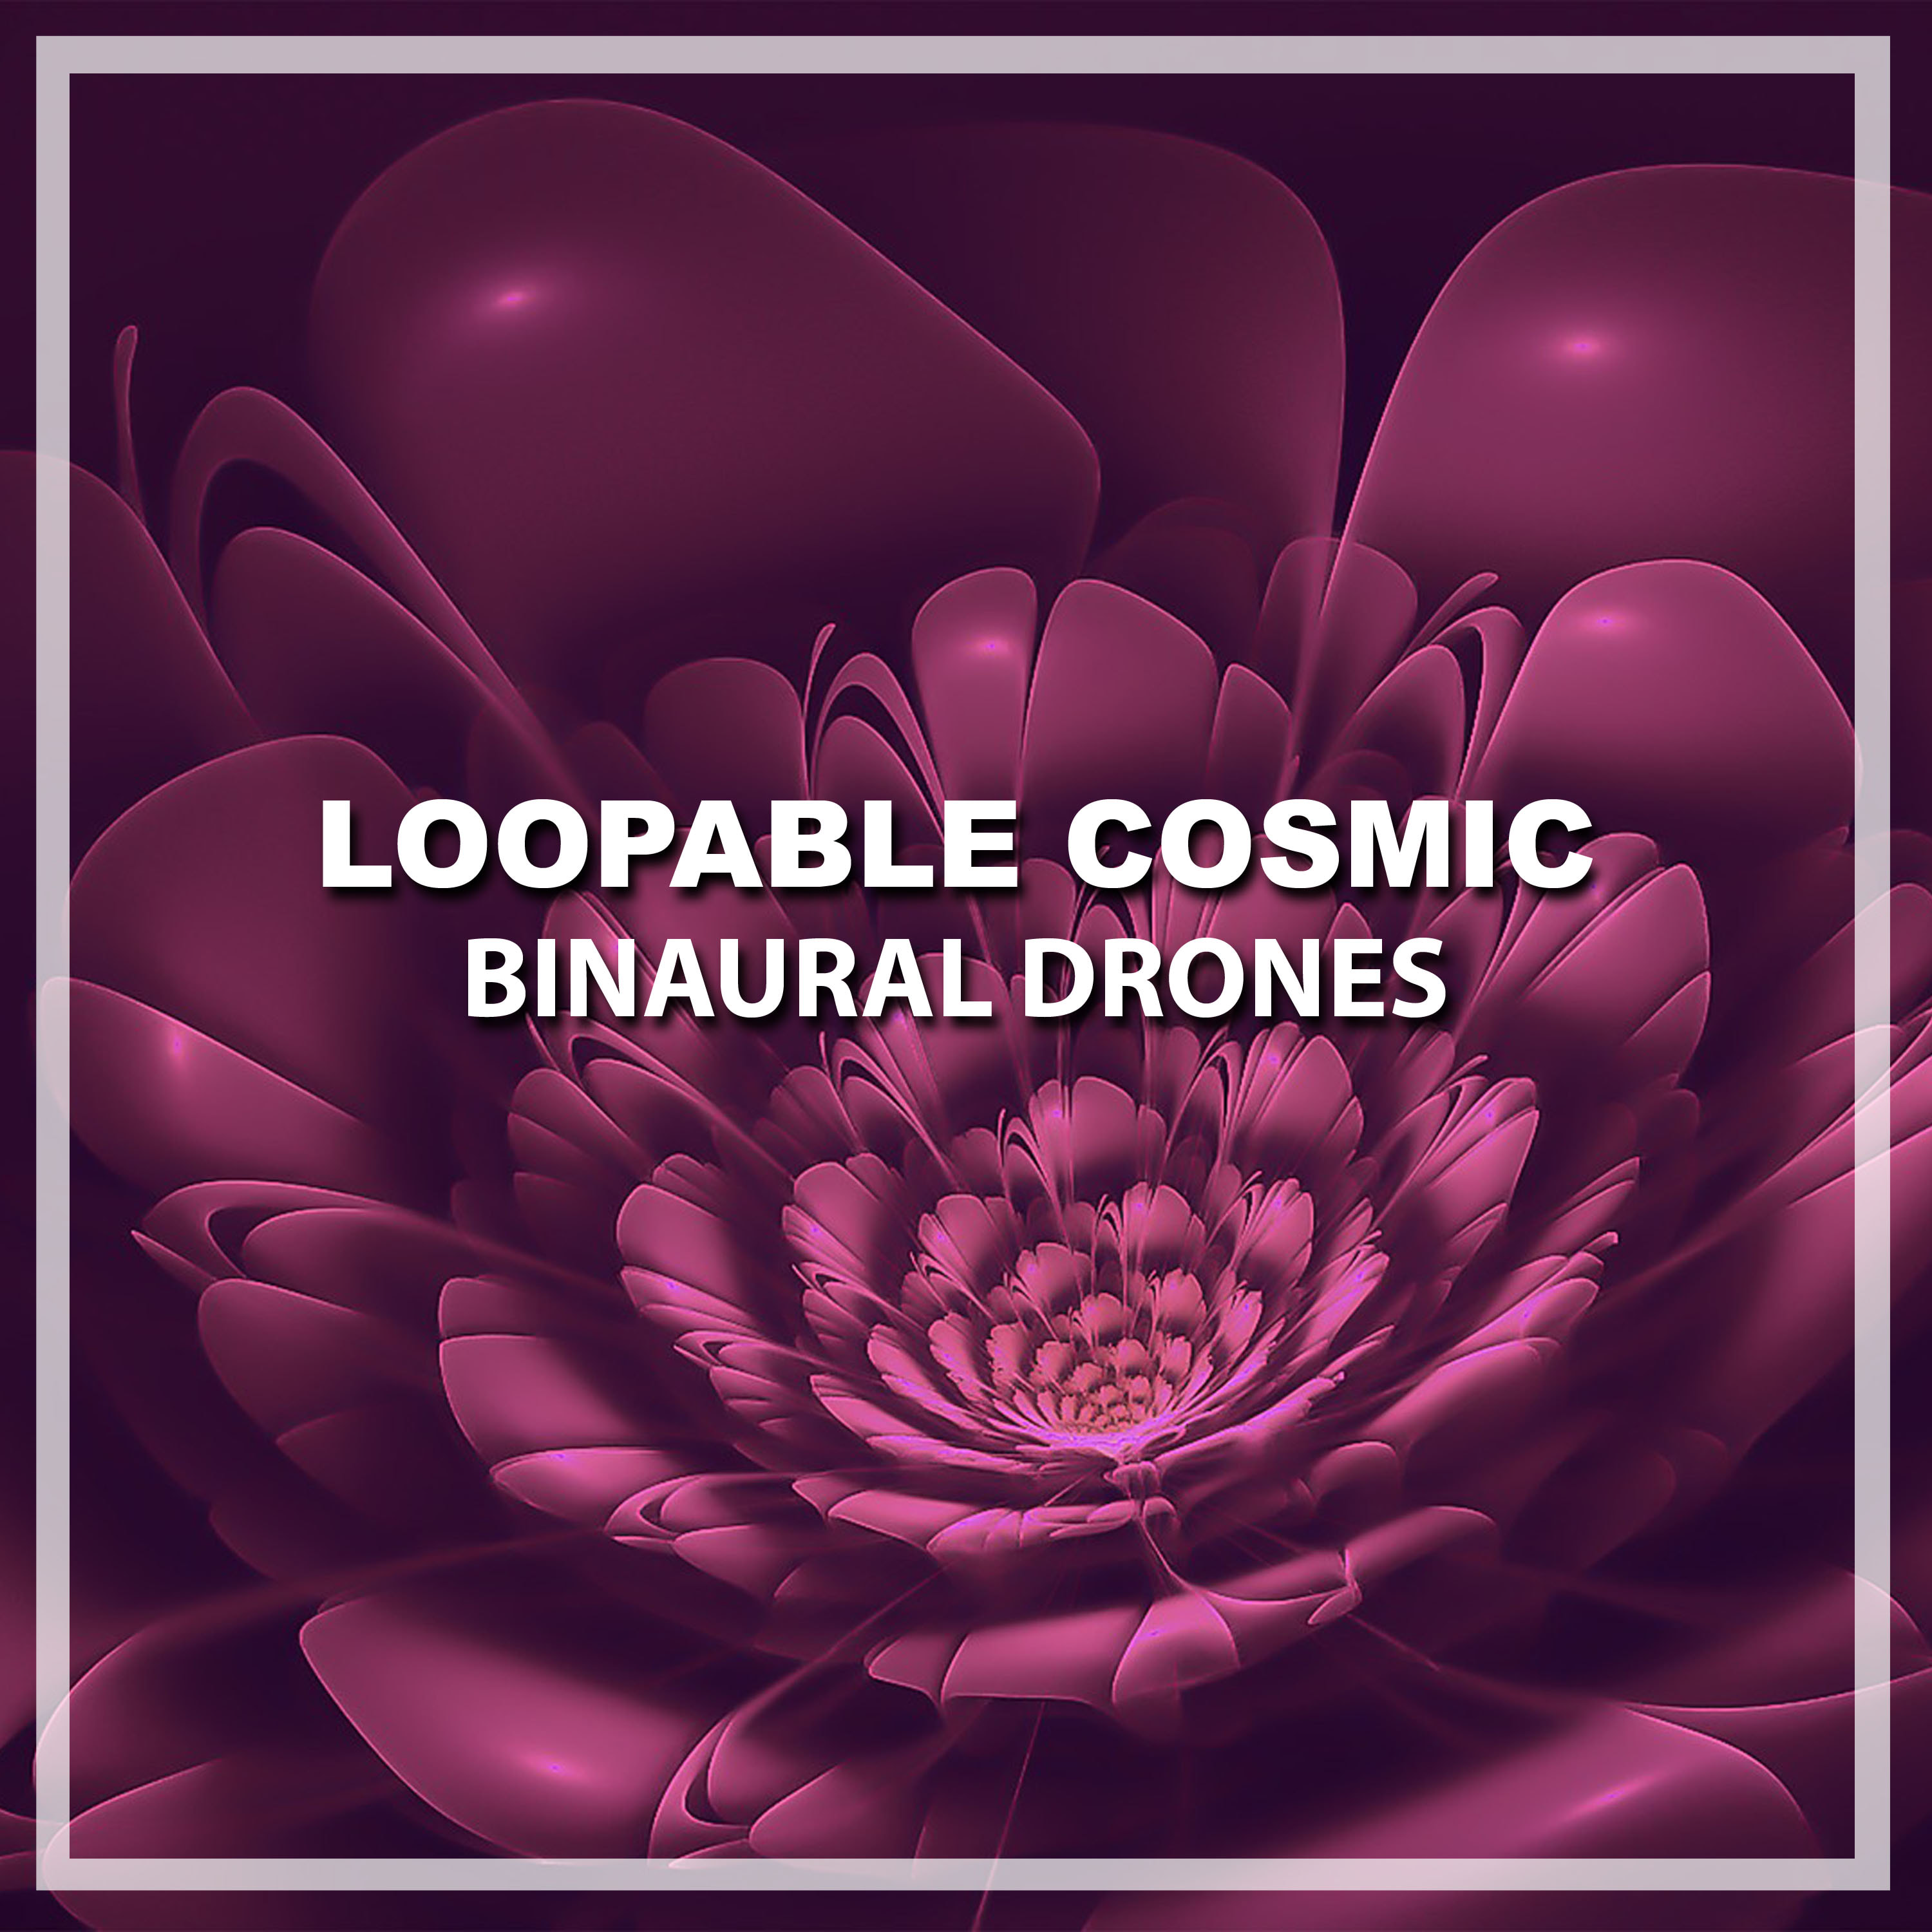 #18 Loopable Cosmic Binaural Drones